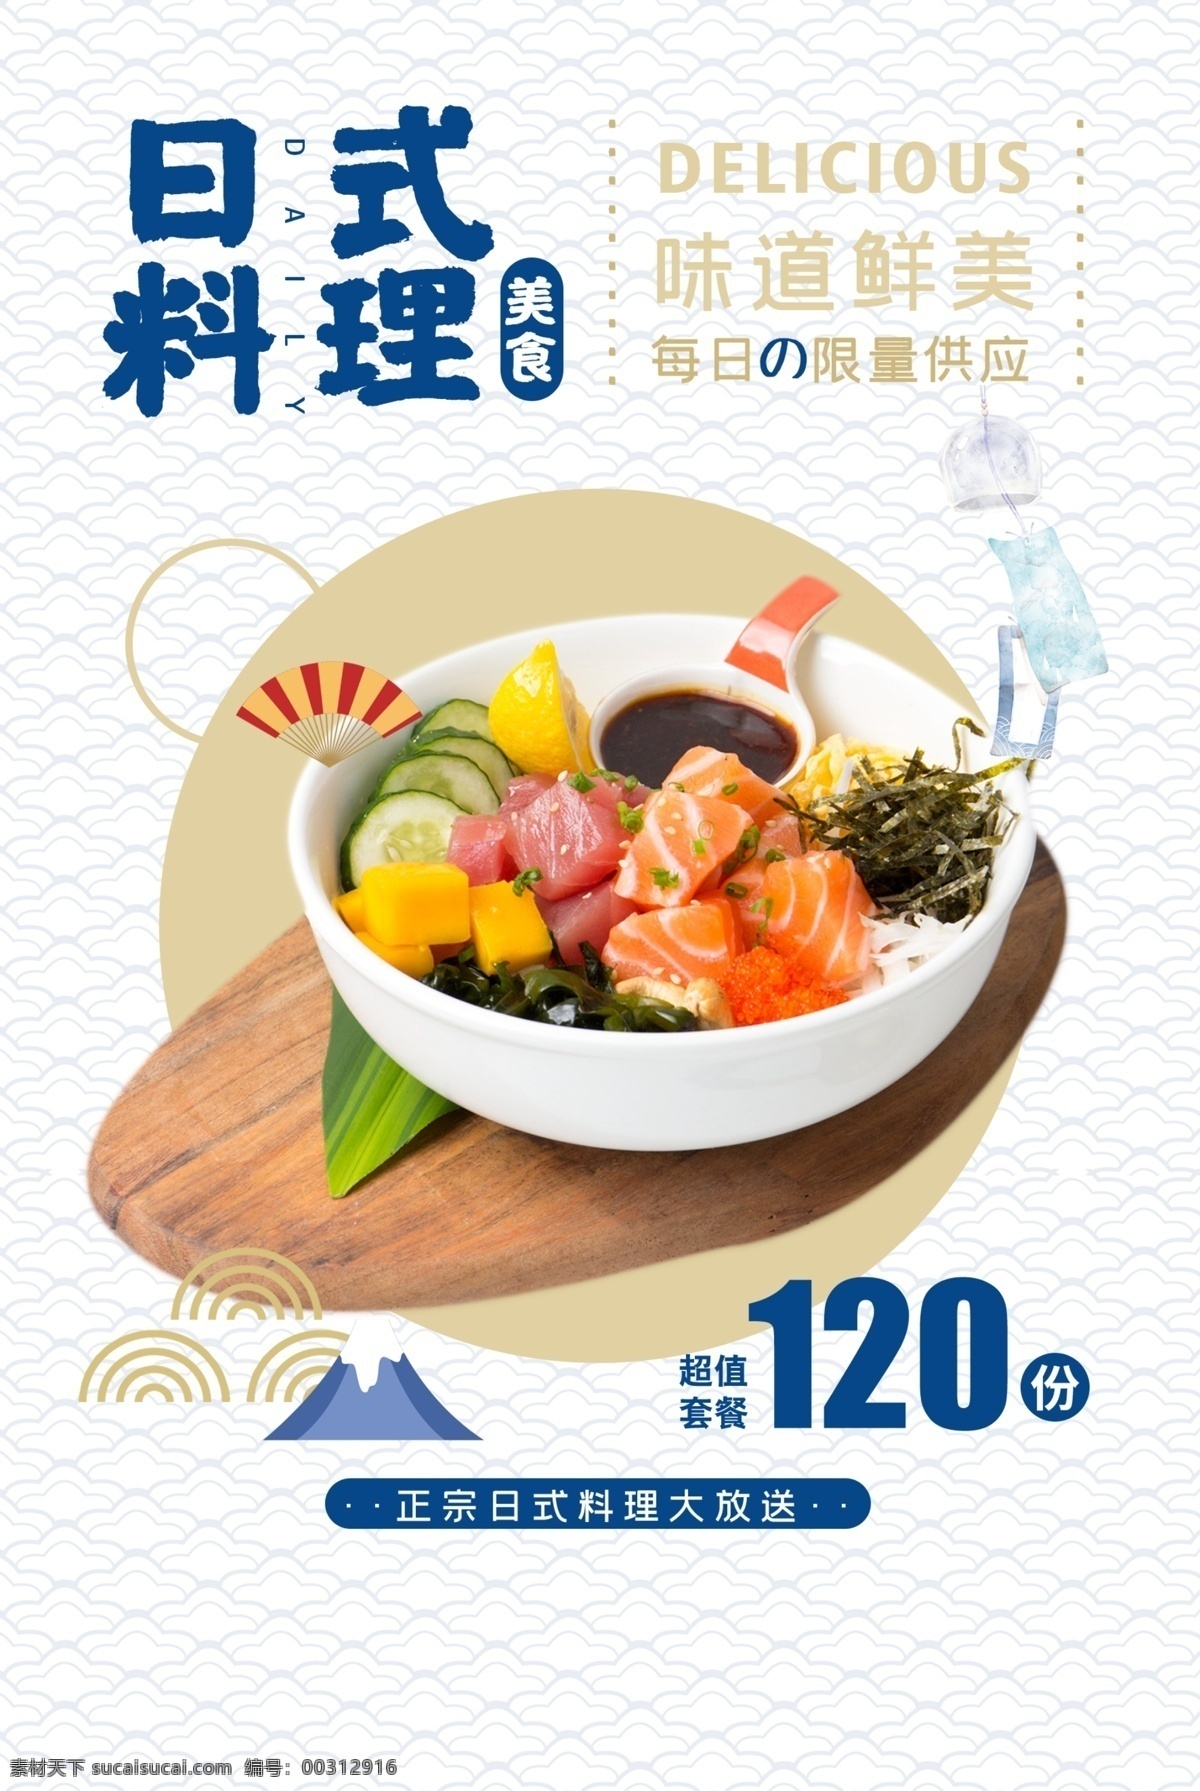 日式 料理 餐饮 宣传 活动 海报 日式料理 餐饮美食 类